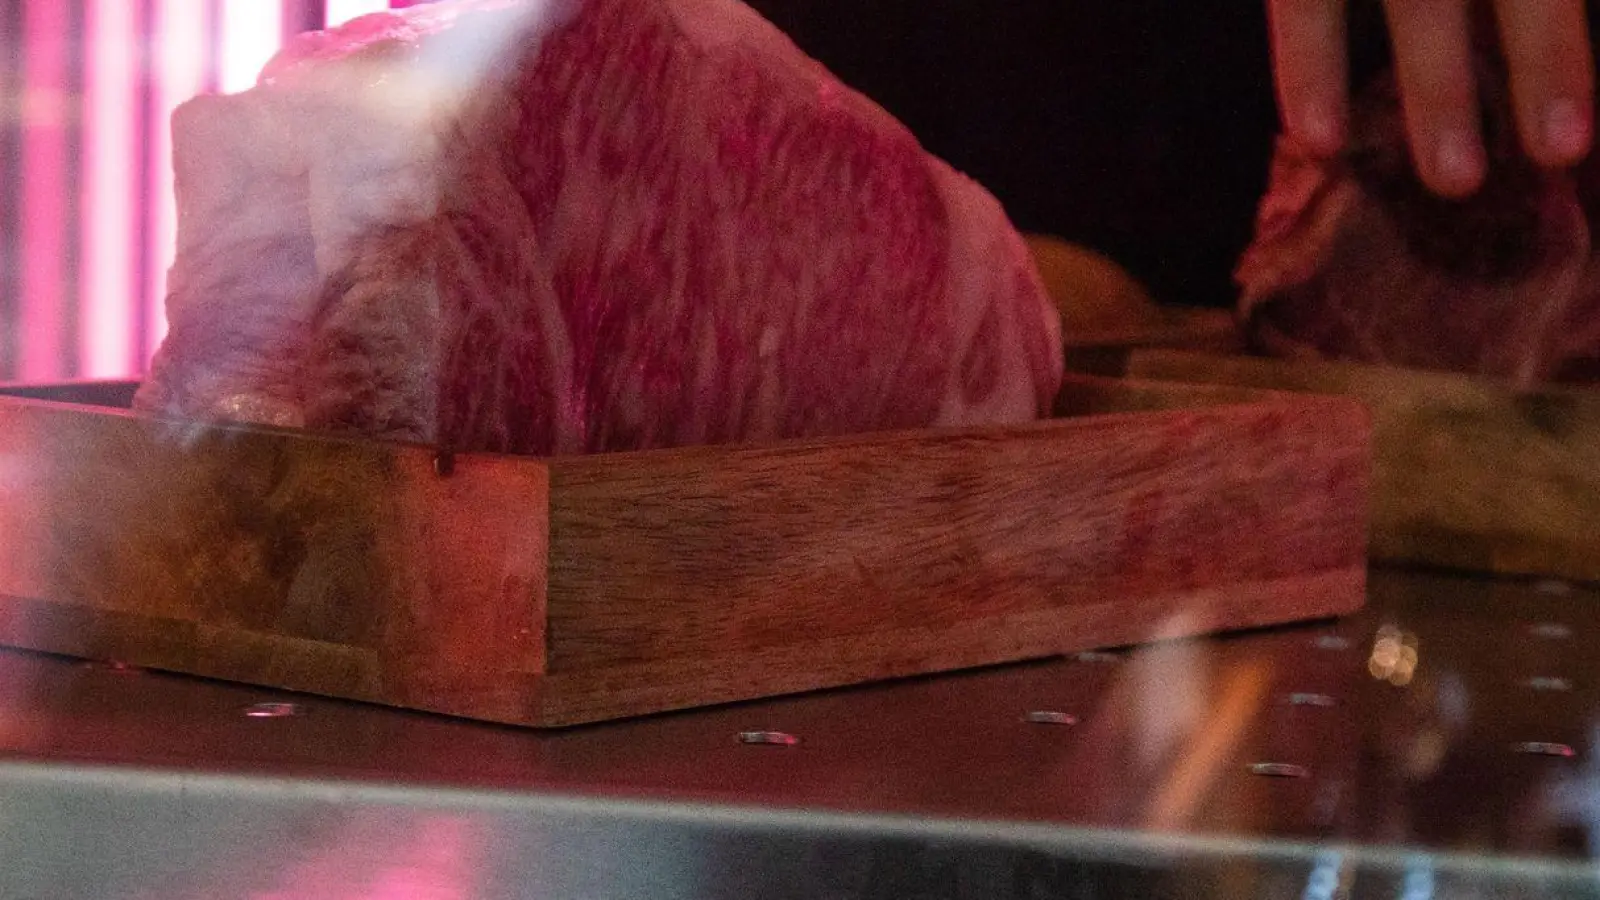 Ein Zwei-Kilo-Stück Wagyu Beef lagert bei 3 bis 4 Grad in einem Gastro-Reifeschrank. (Foto: Christin Klose/dpa-tmn/dpa)